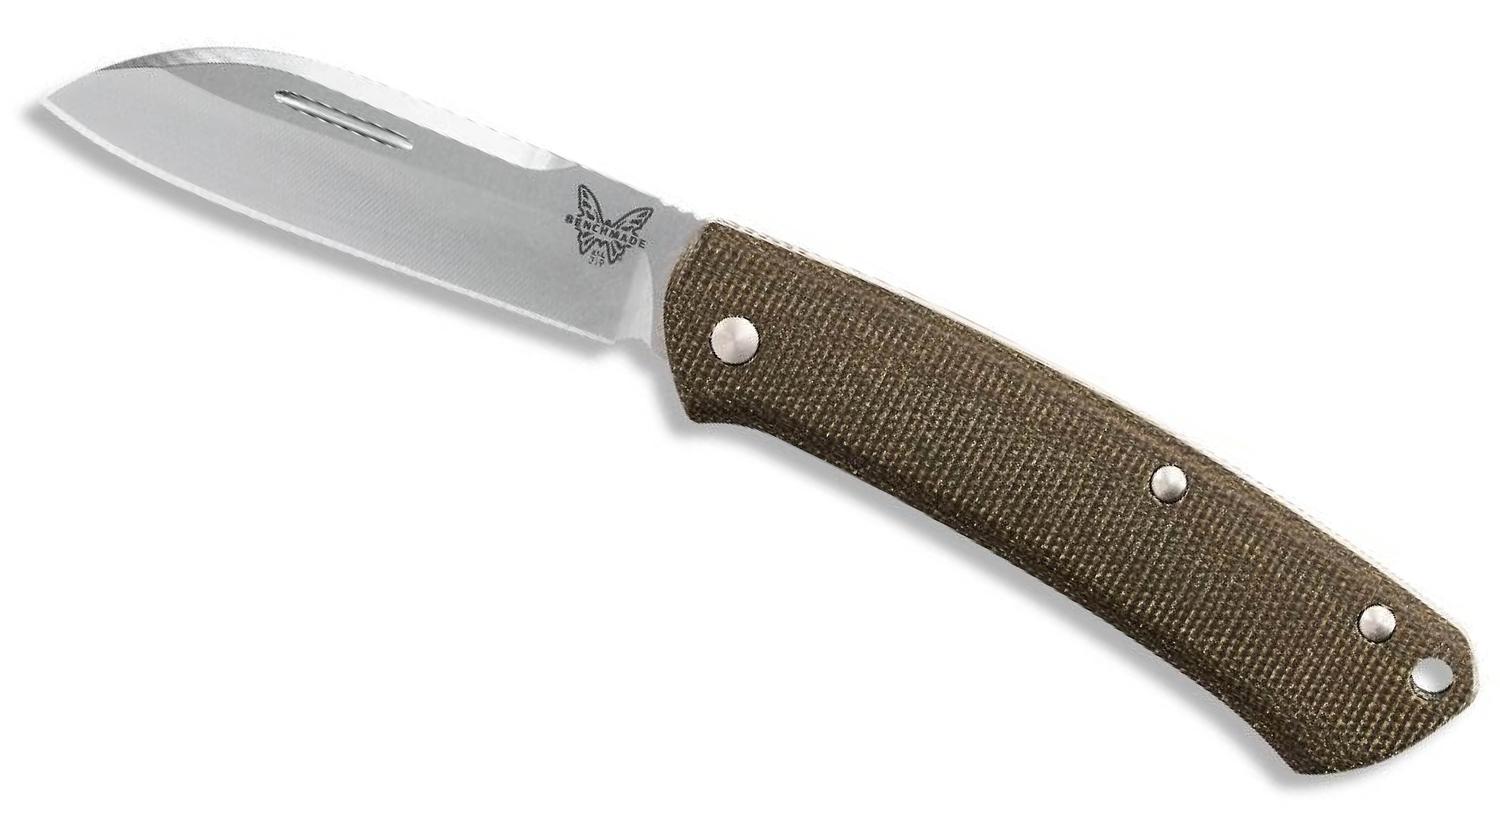  319 Proper Manual Folding Knife 2.86in S30v Satin